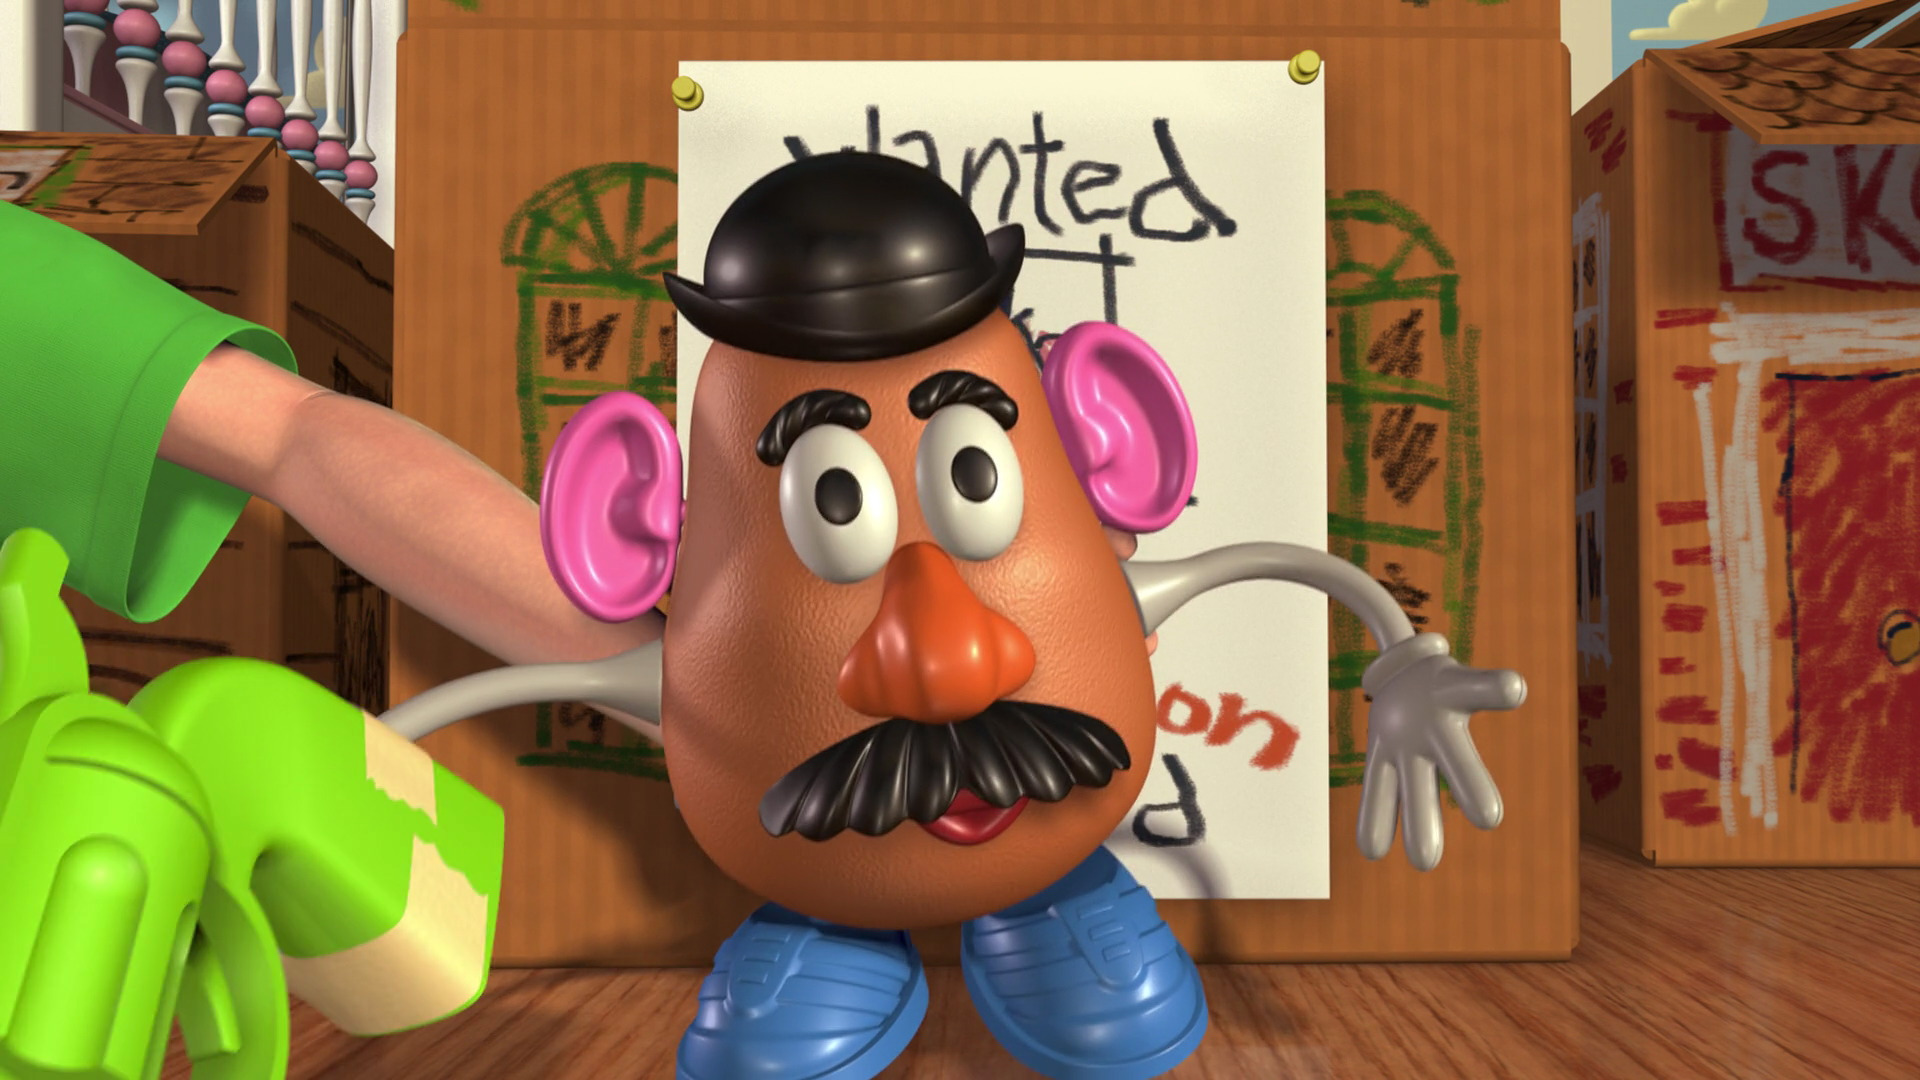 Mr. Potato Head Gallery